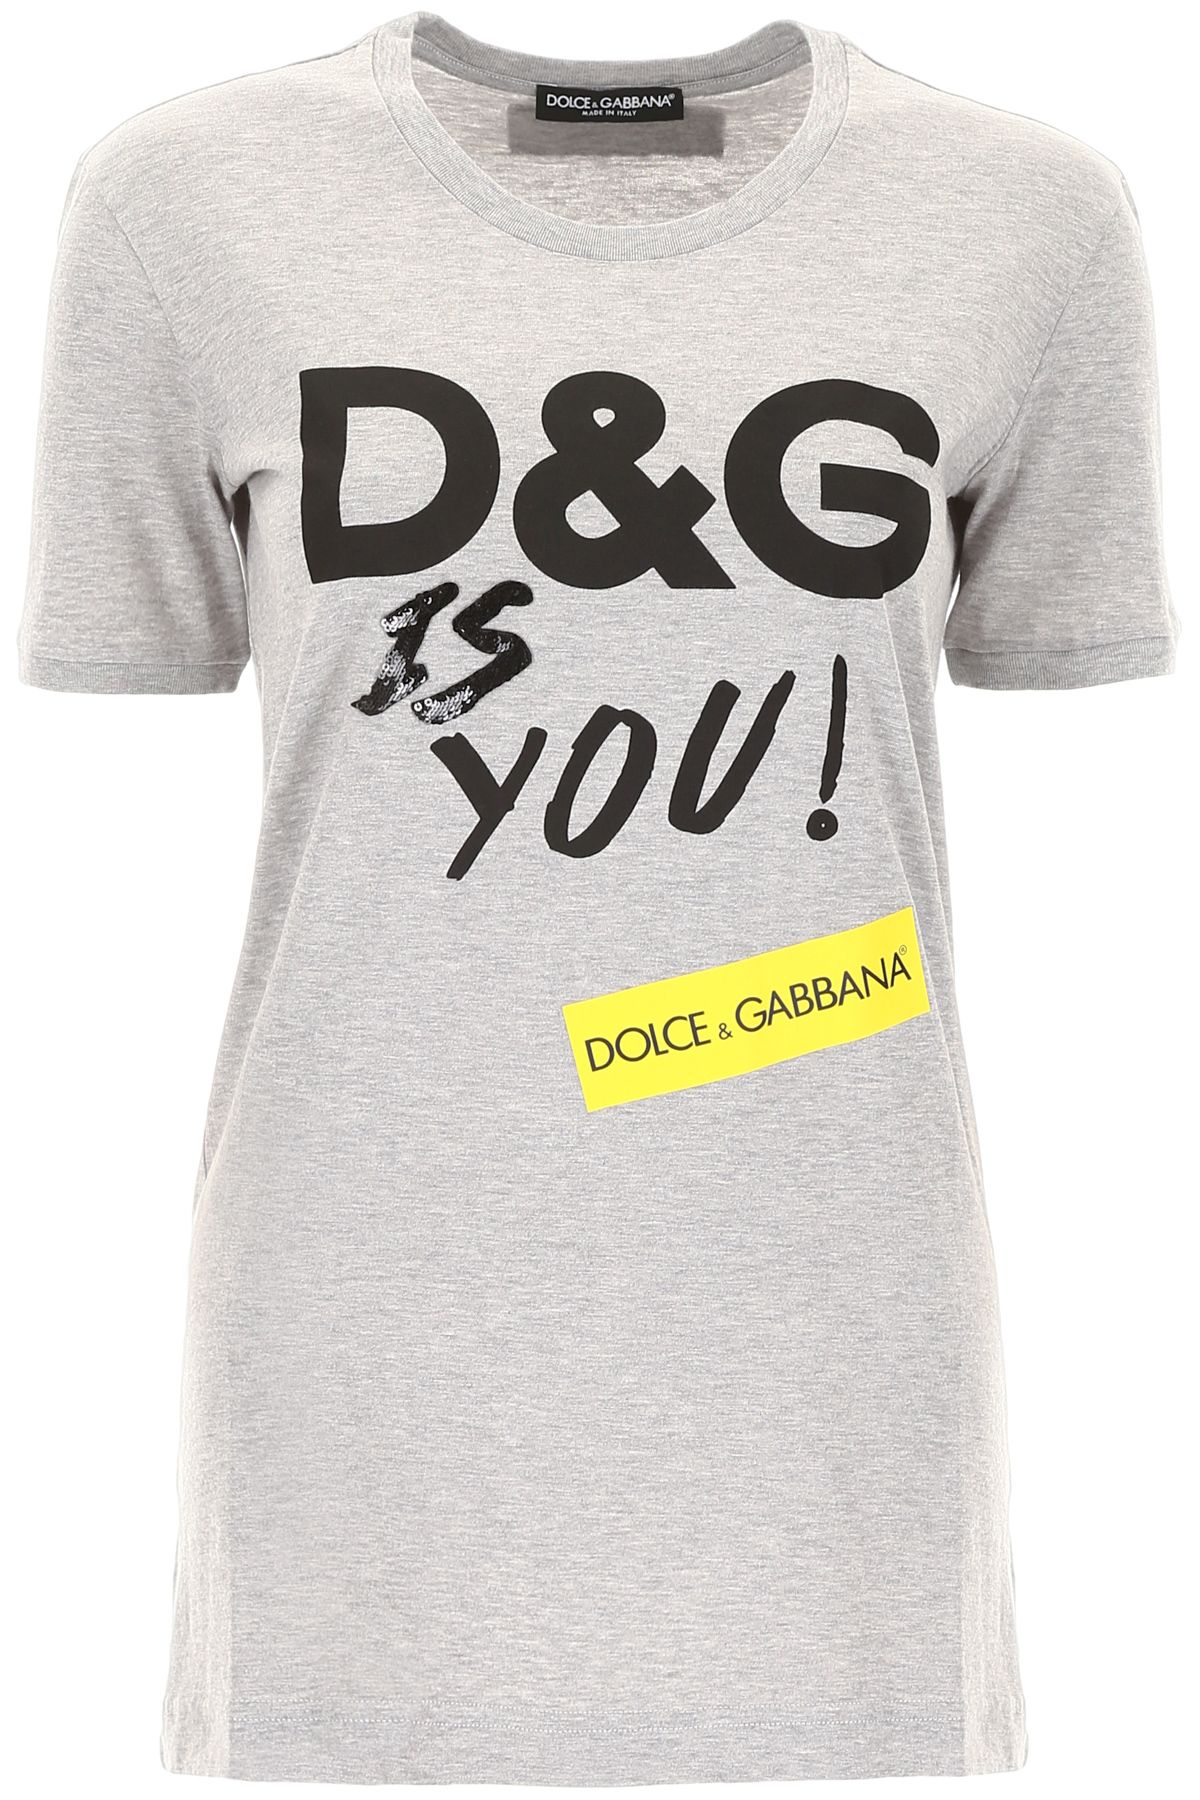 DOLCE & GABBANA Dolce & Gabbana D&amp;g Is You T-shirt,10860710